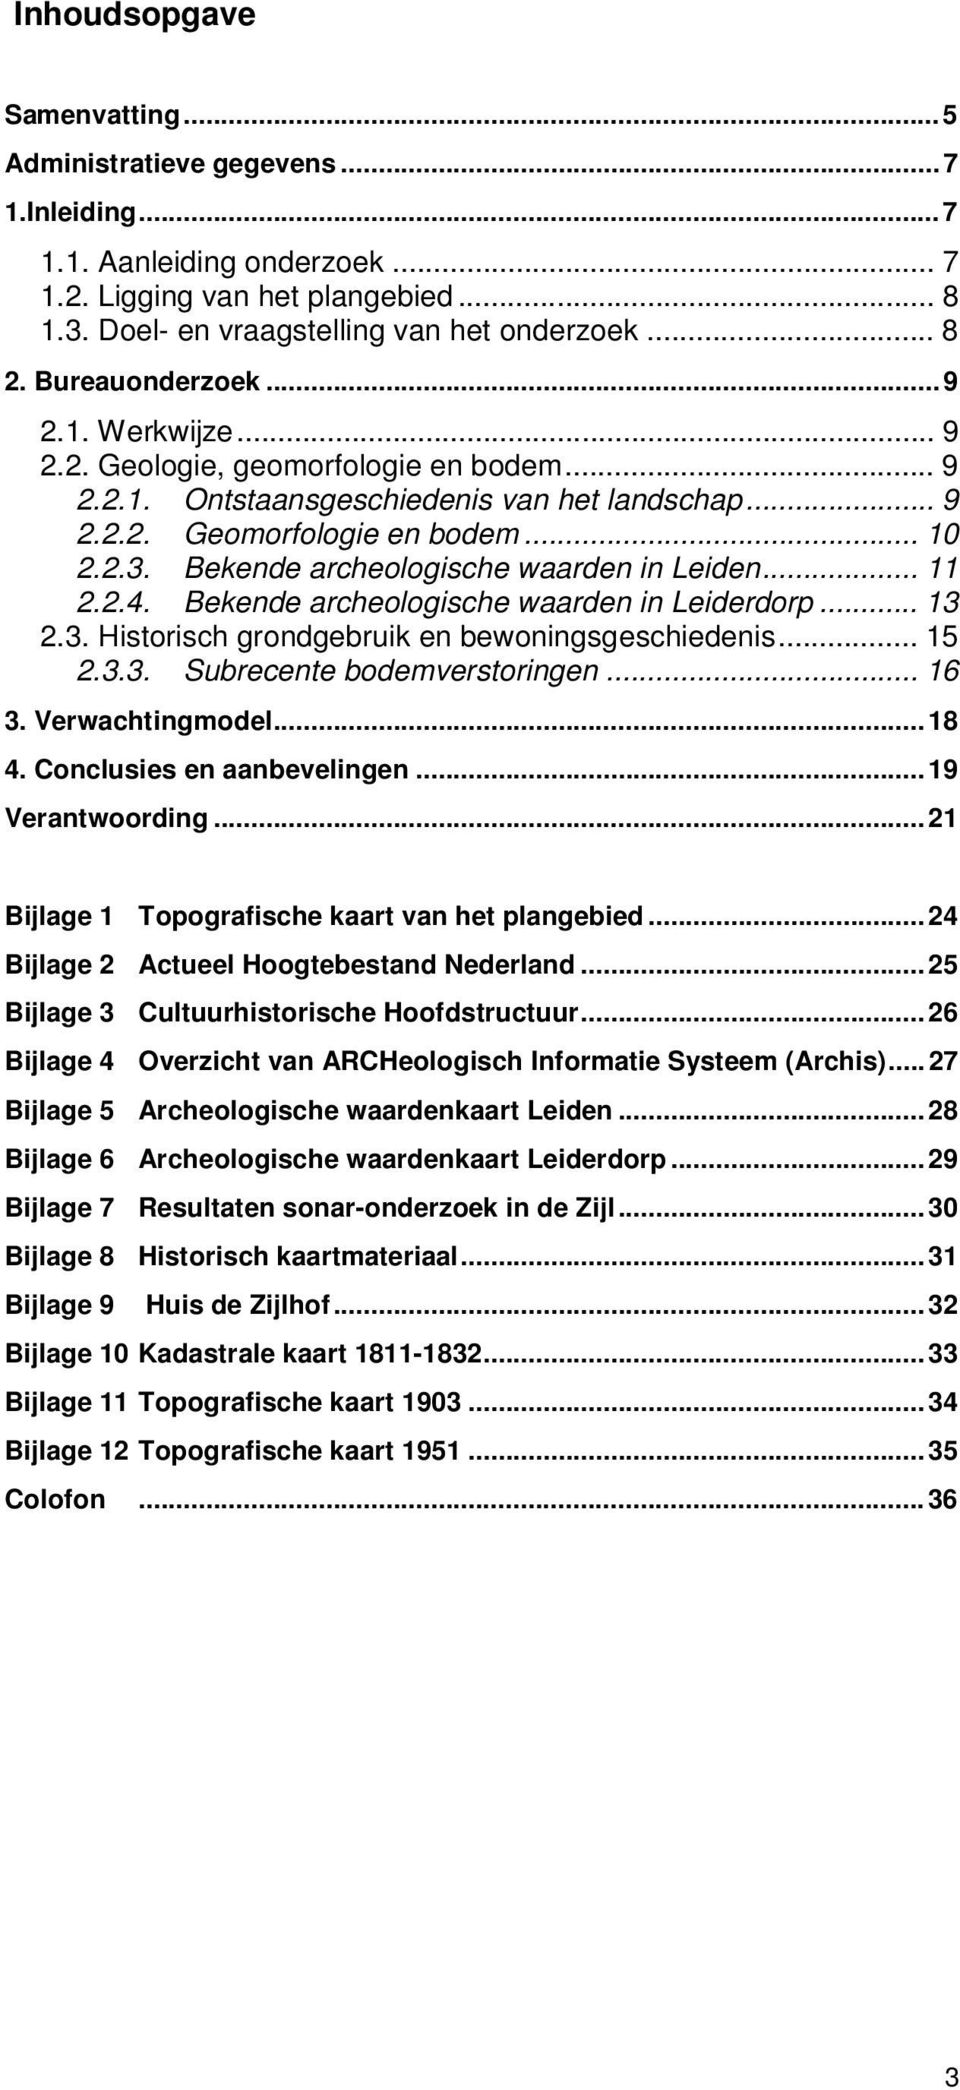 Bekende archeologische waarden in Leiden... 11 2.2.4. Bekende archeologische waarden in Leiderdorp... 13 2.3. Historisch grondgebruik en bewoningsgeschiedenis... 15 2.3.3. Subrecente bodemverstoringen.